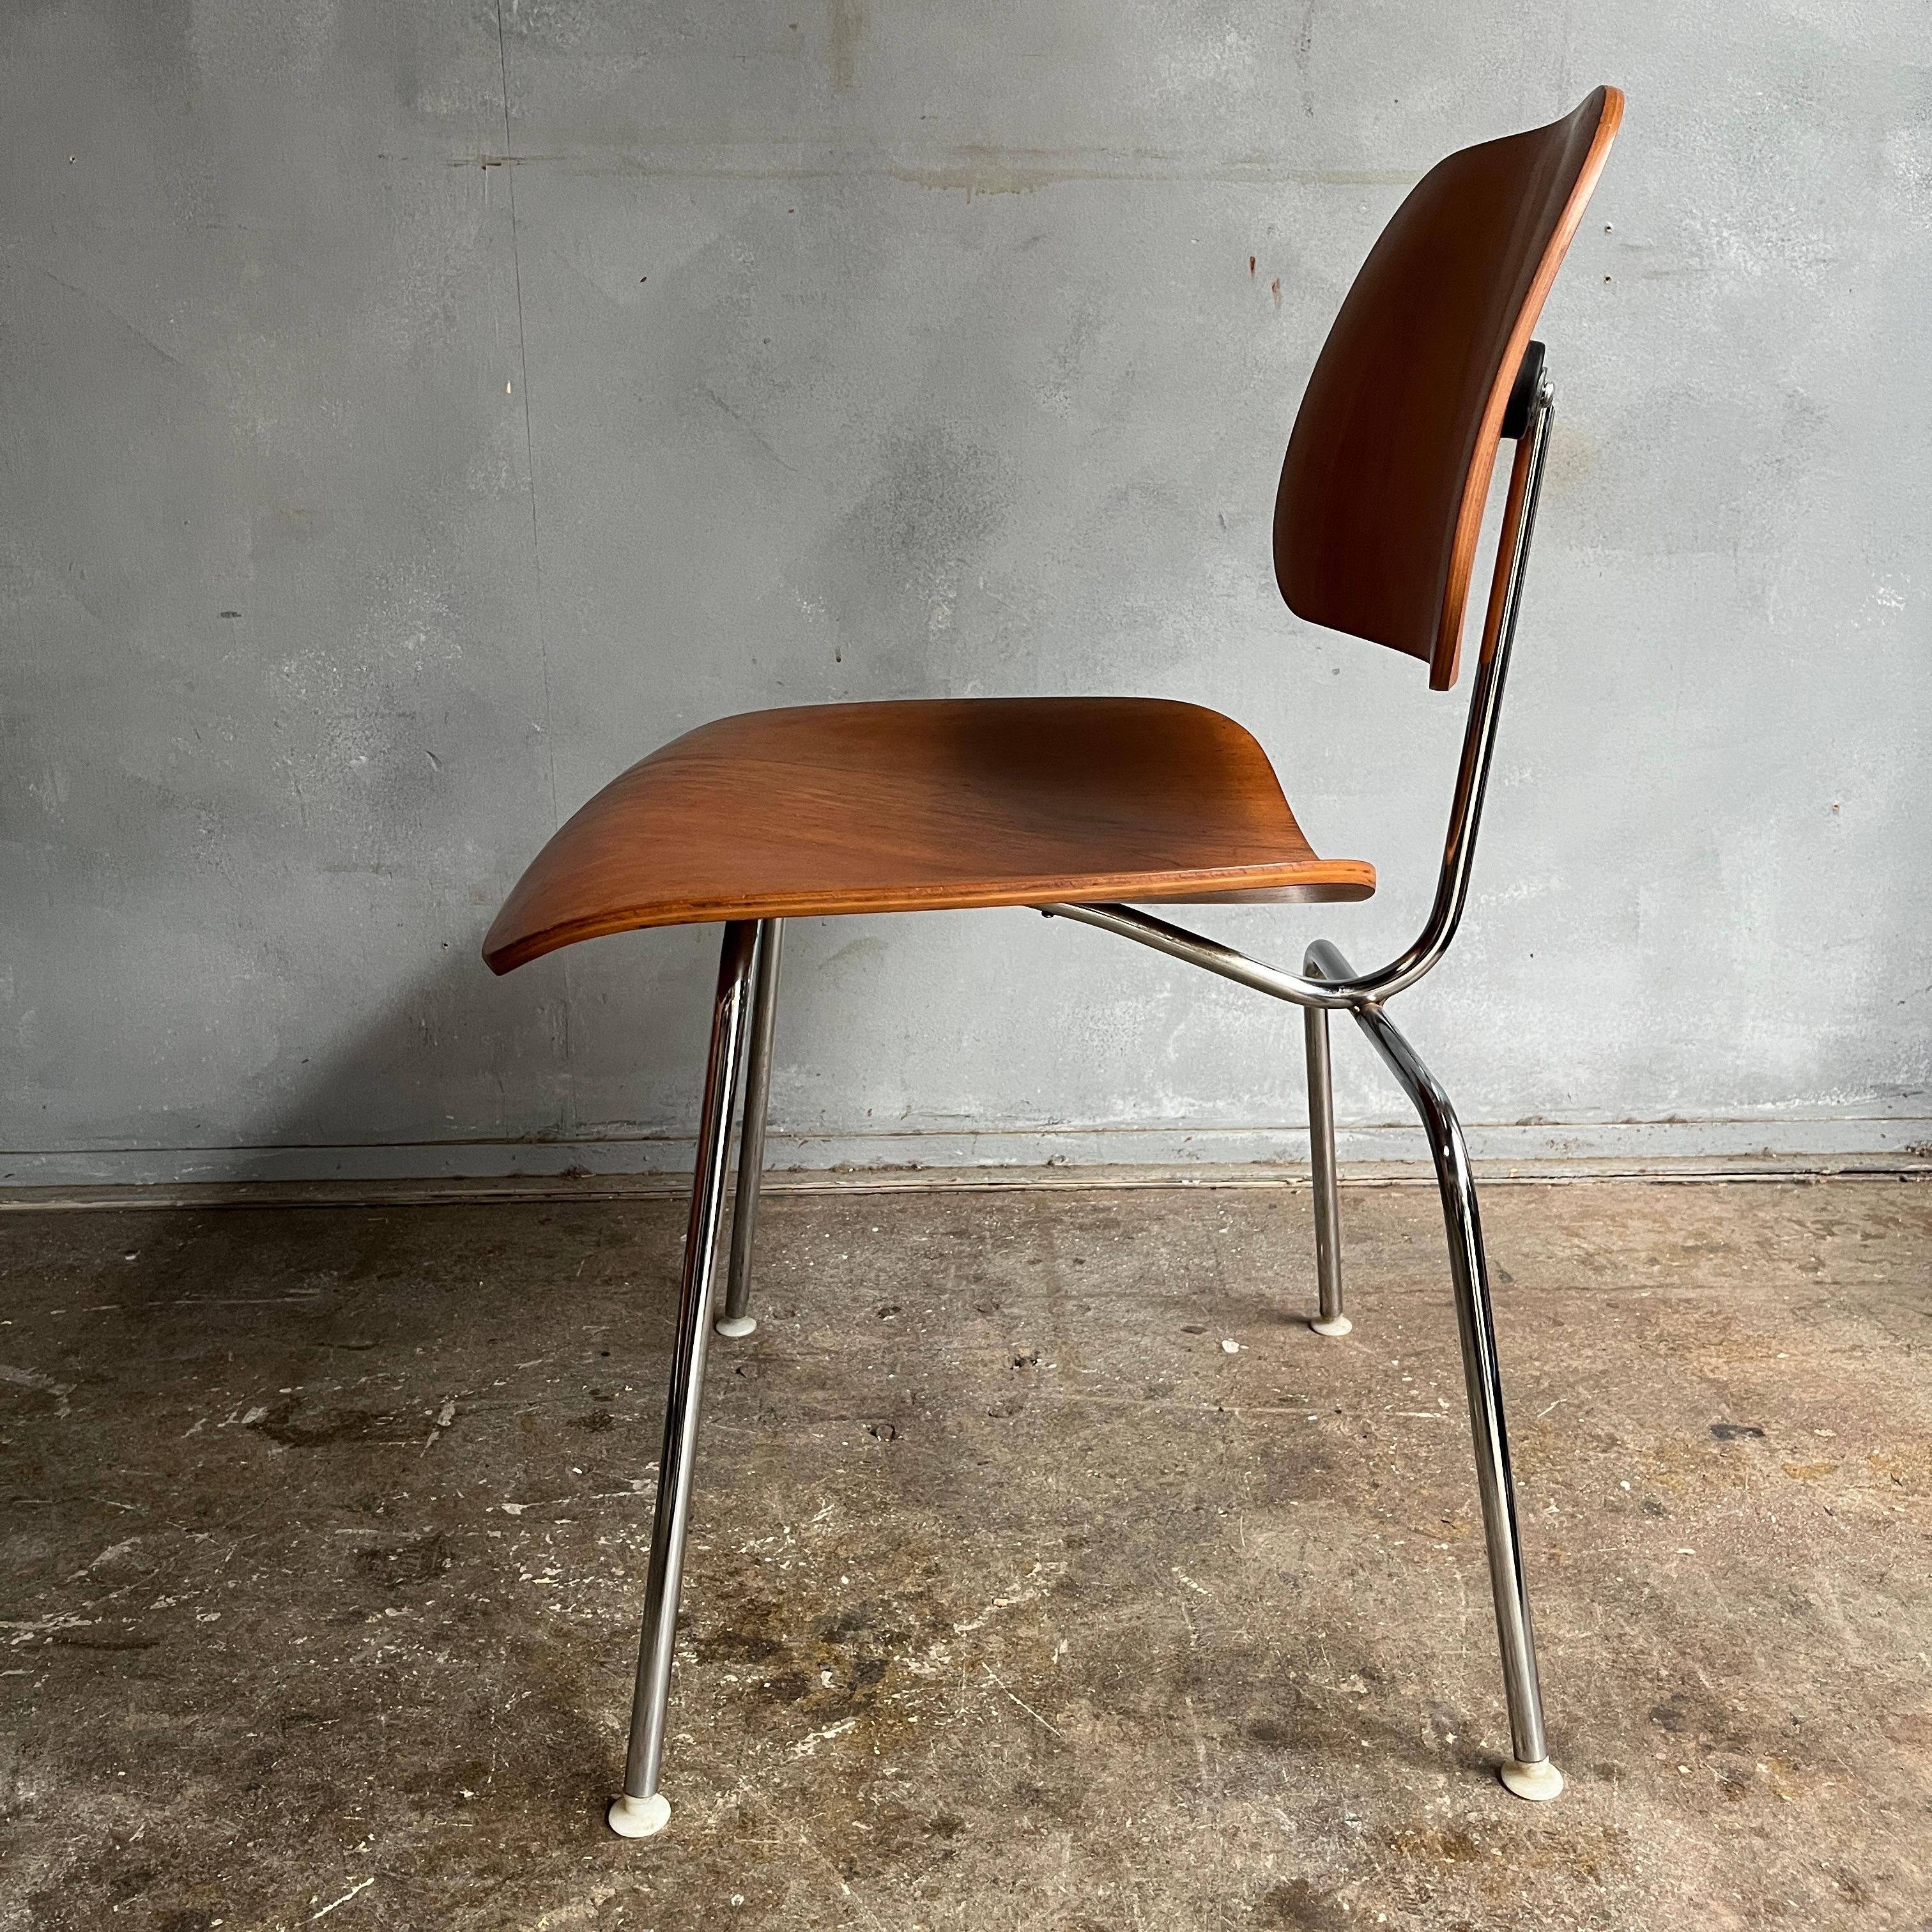 Chaises en contreplaqué courbé produites par Herman Miller et conçues par Charles et Ray Eames. Cette chaise est en très bon état vintage, montre mieux que prévu avec peu de signes d'utilisation. Bien entendu, on peut s'attendre à ce qu'il y ait un